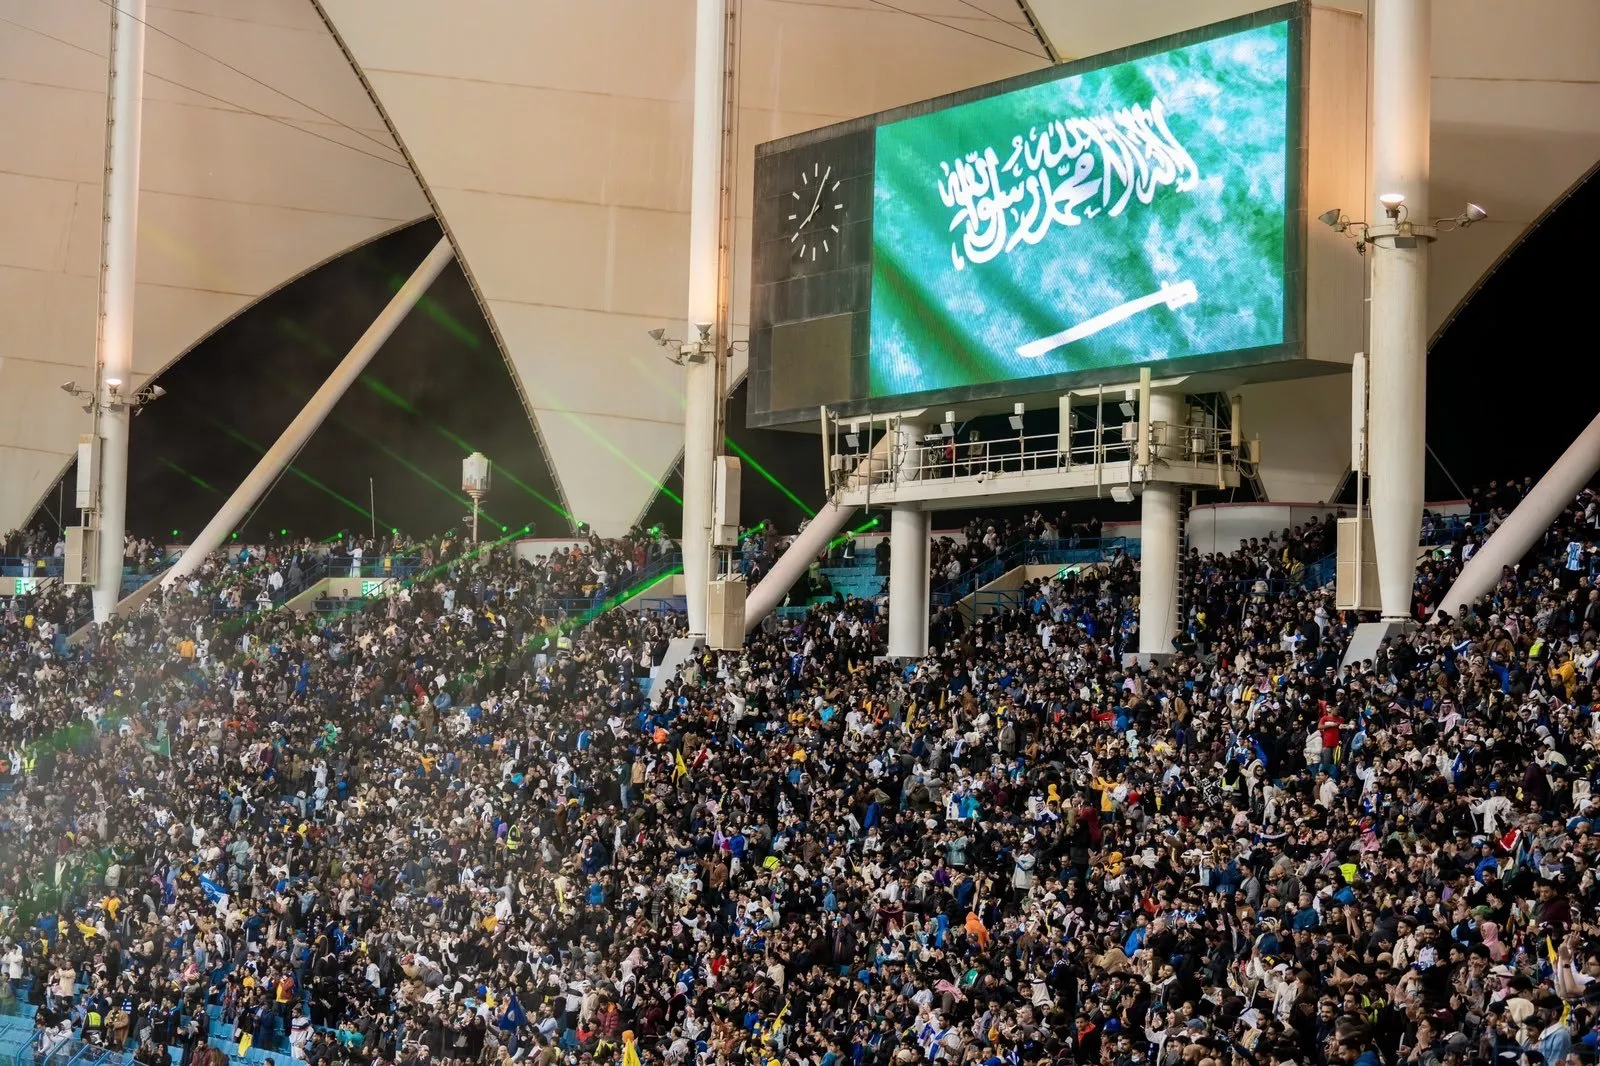 كأس موسم الرياض ينتهي بفوز فريق ميسي على فريق رونالدو، وهكذا كانت الأجواء